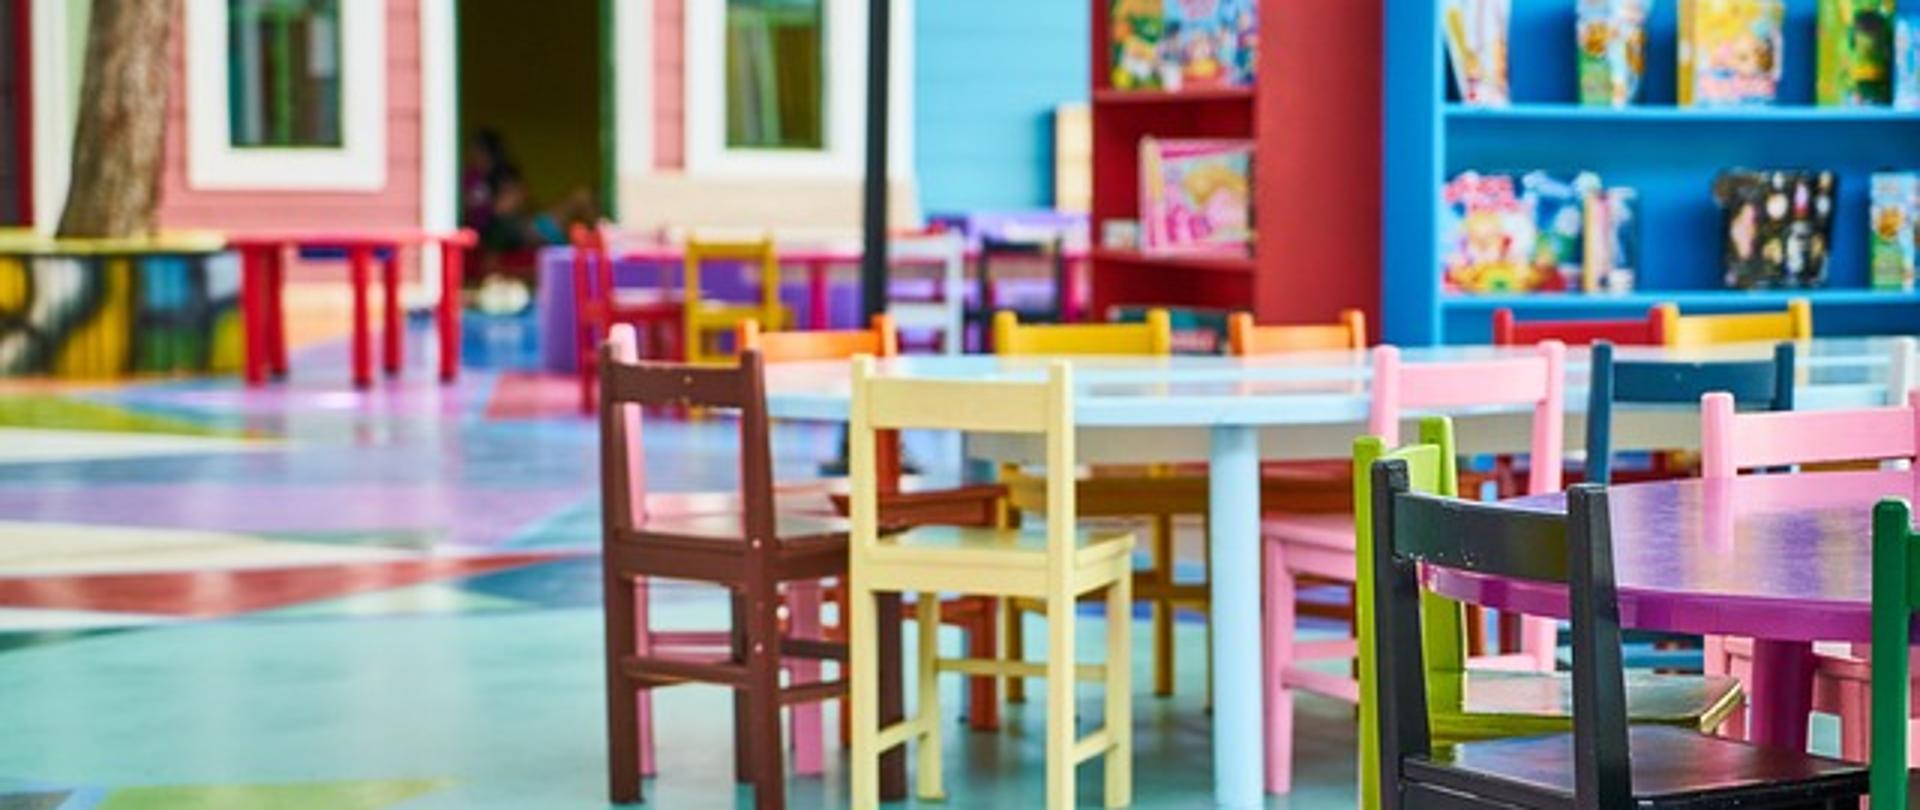 Dekoracje, stoliki i krzesełka przedszkolne, półki z zabawkami